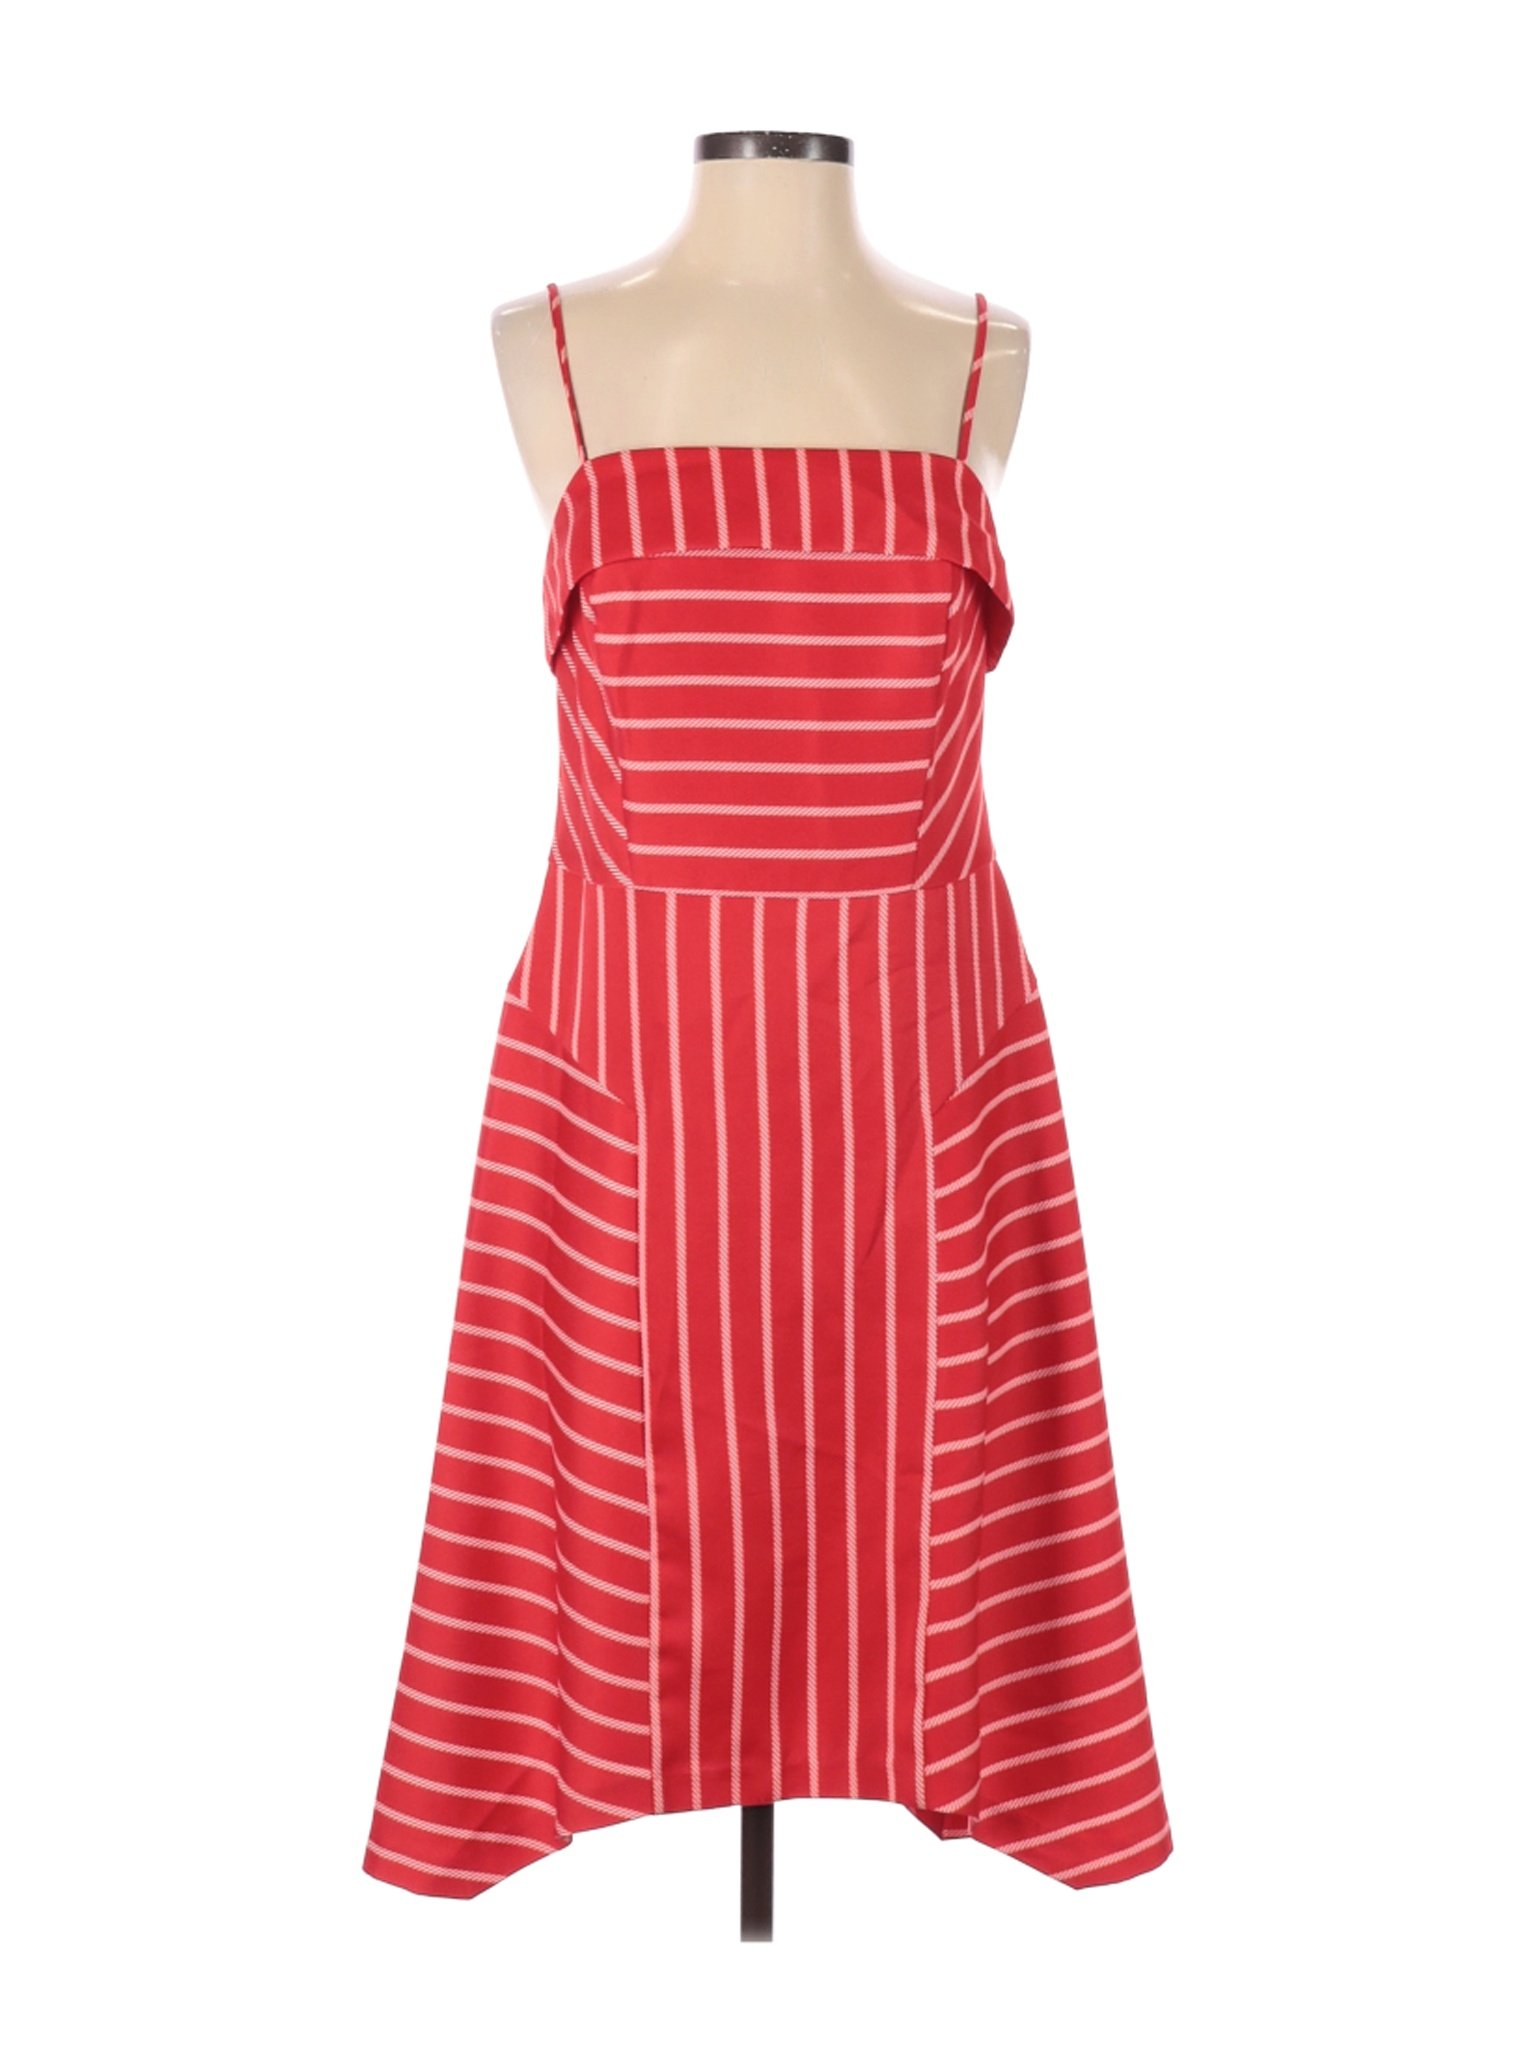 Banana Republic Women Red Casual Dress 4 | eBay